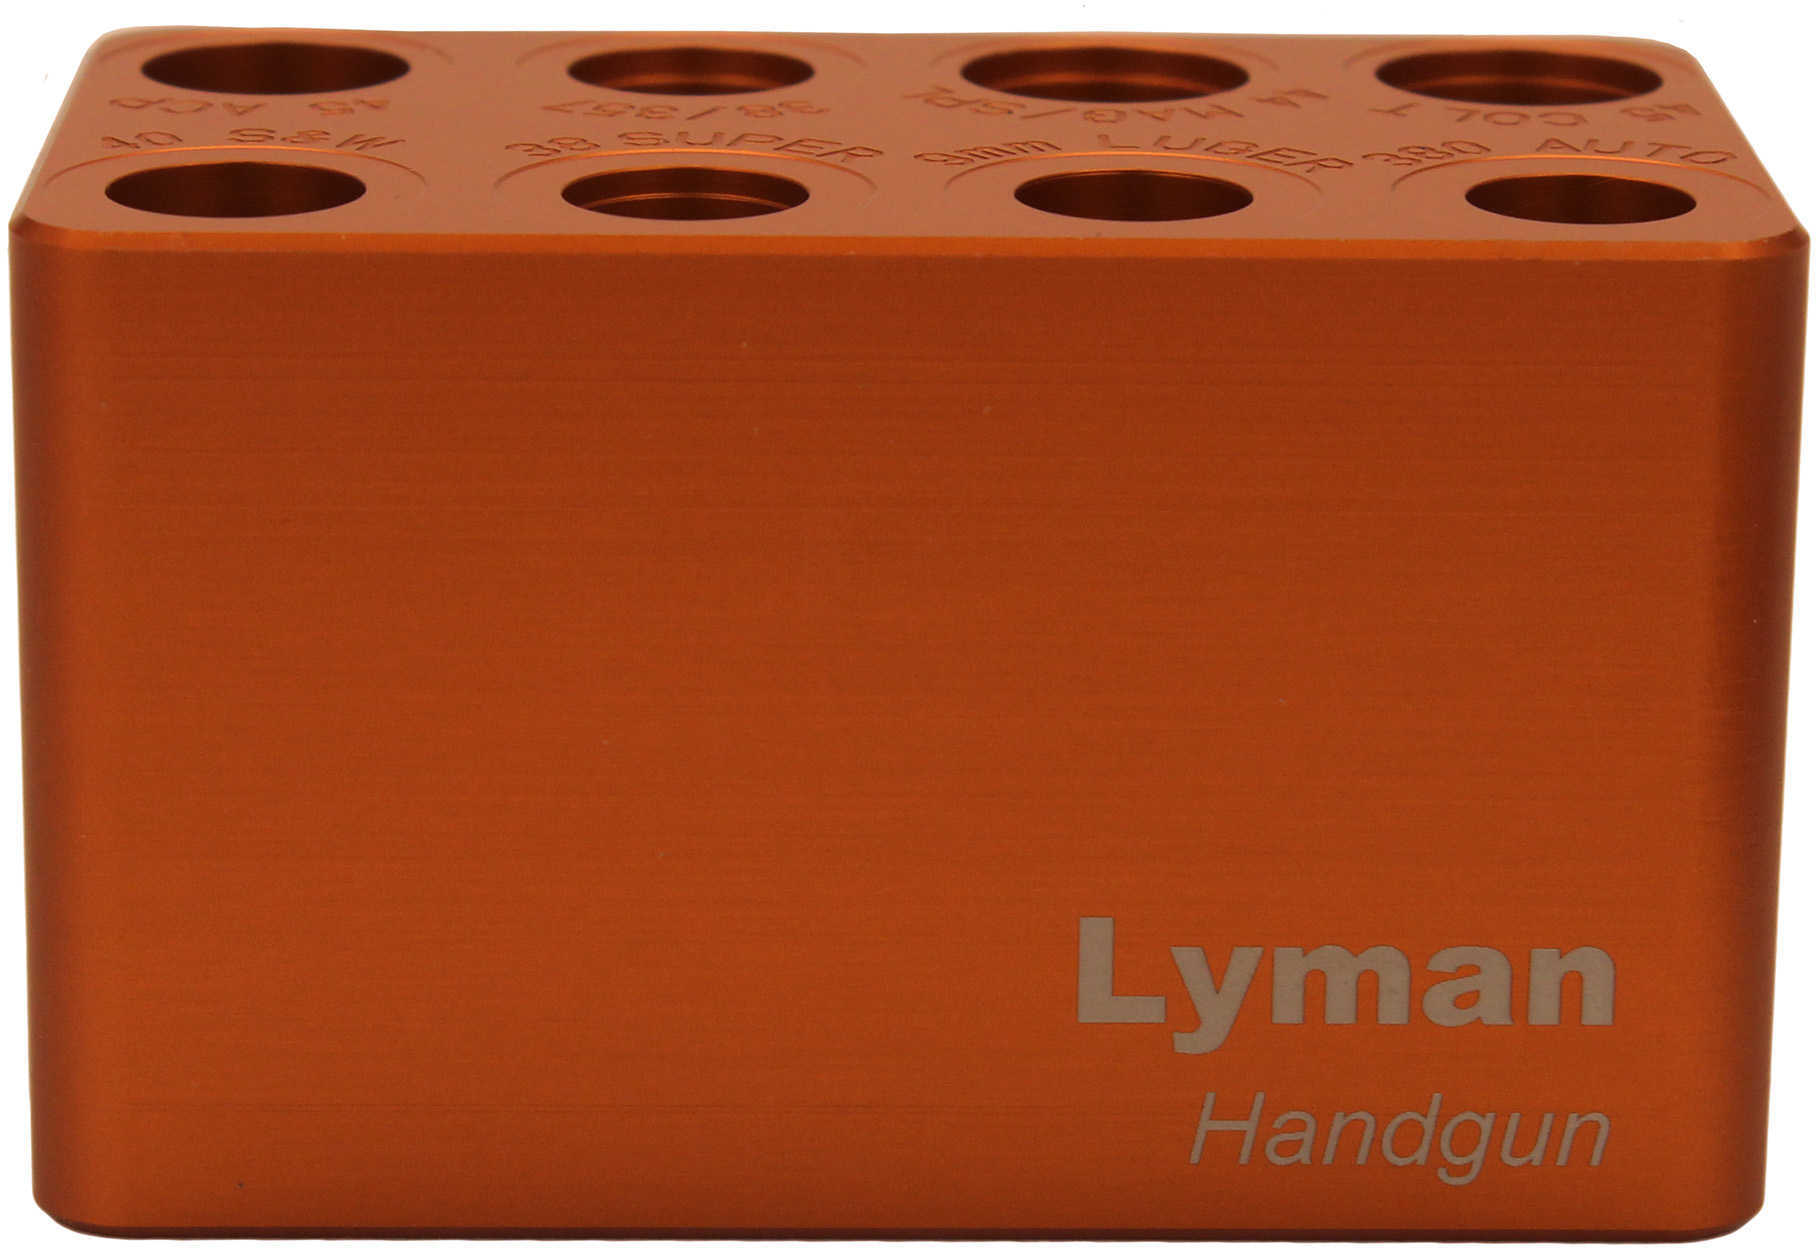 LYM 7833000 Handgun Cartridge Checker